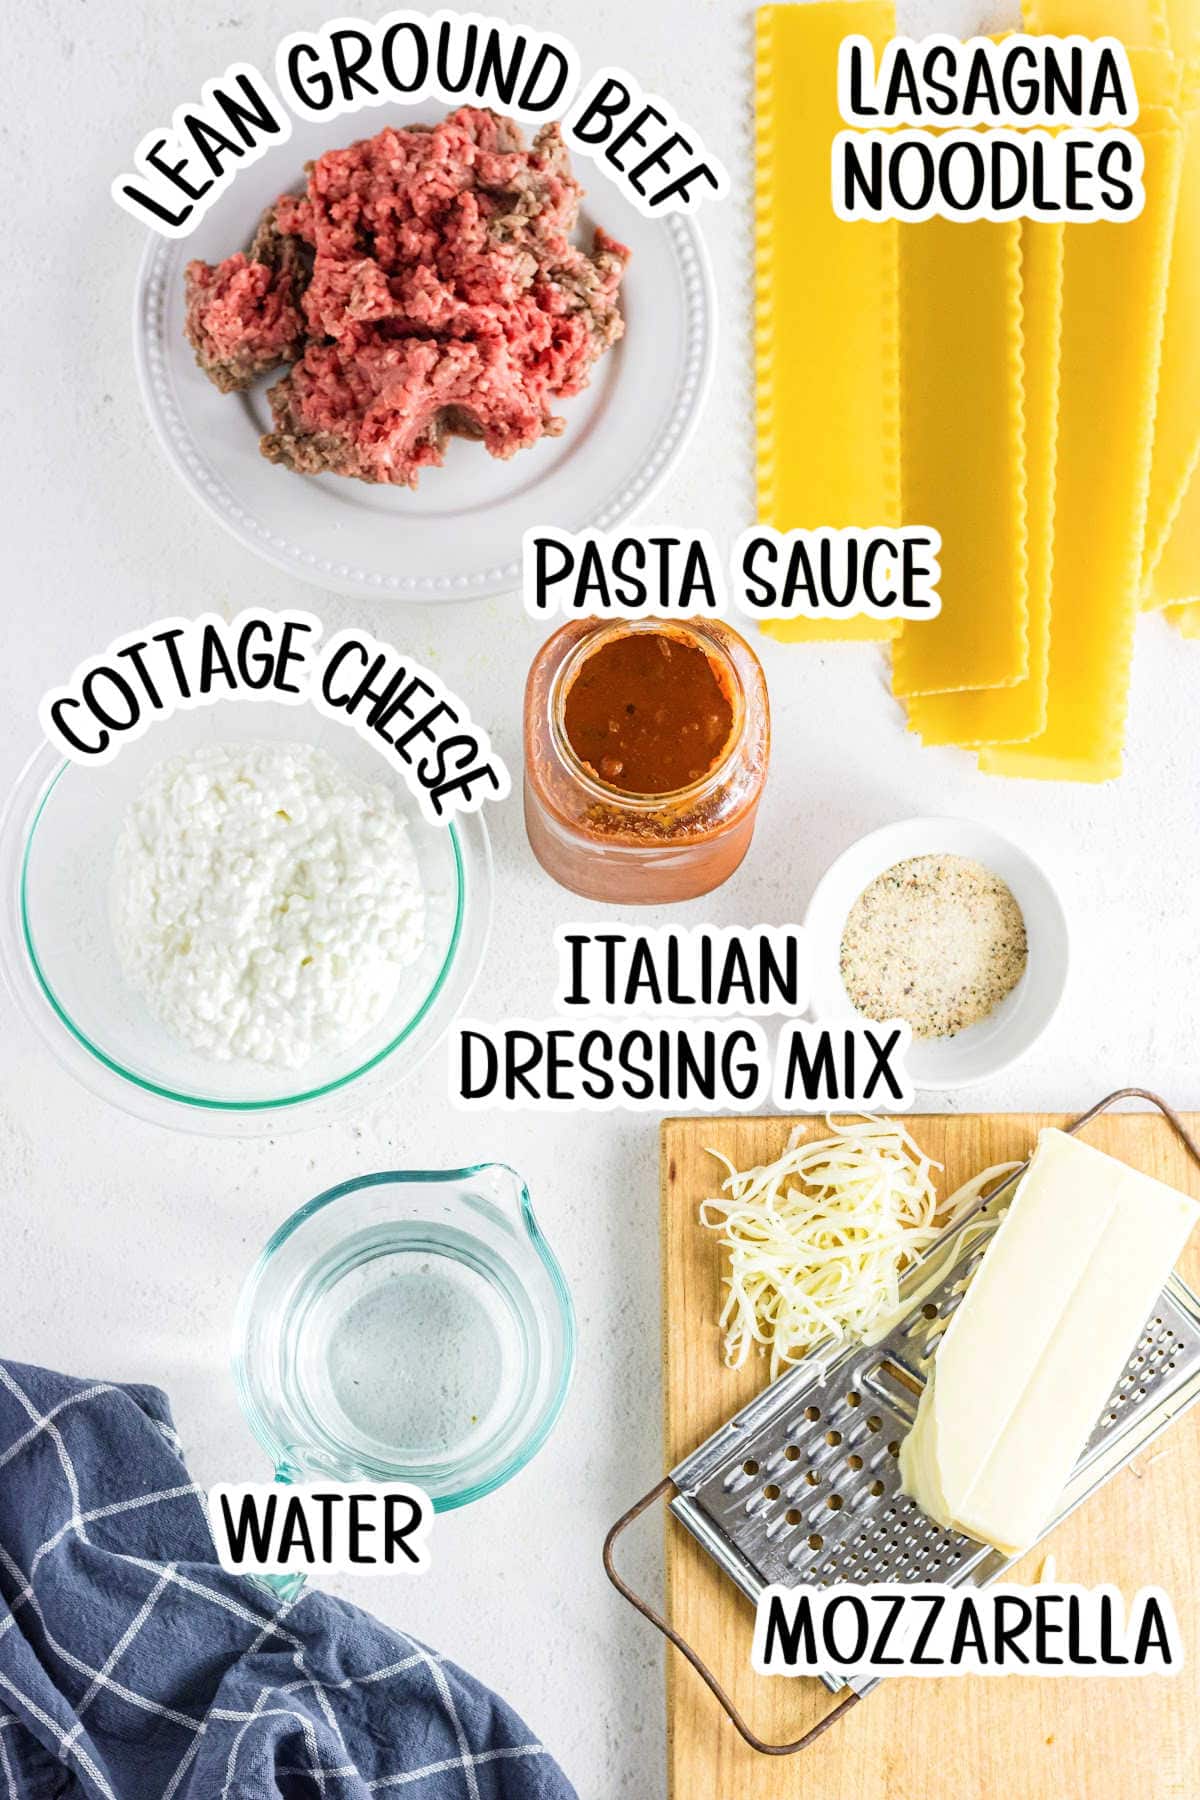 Labeled ingredients for skillet lasagna.